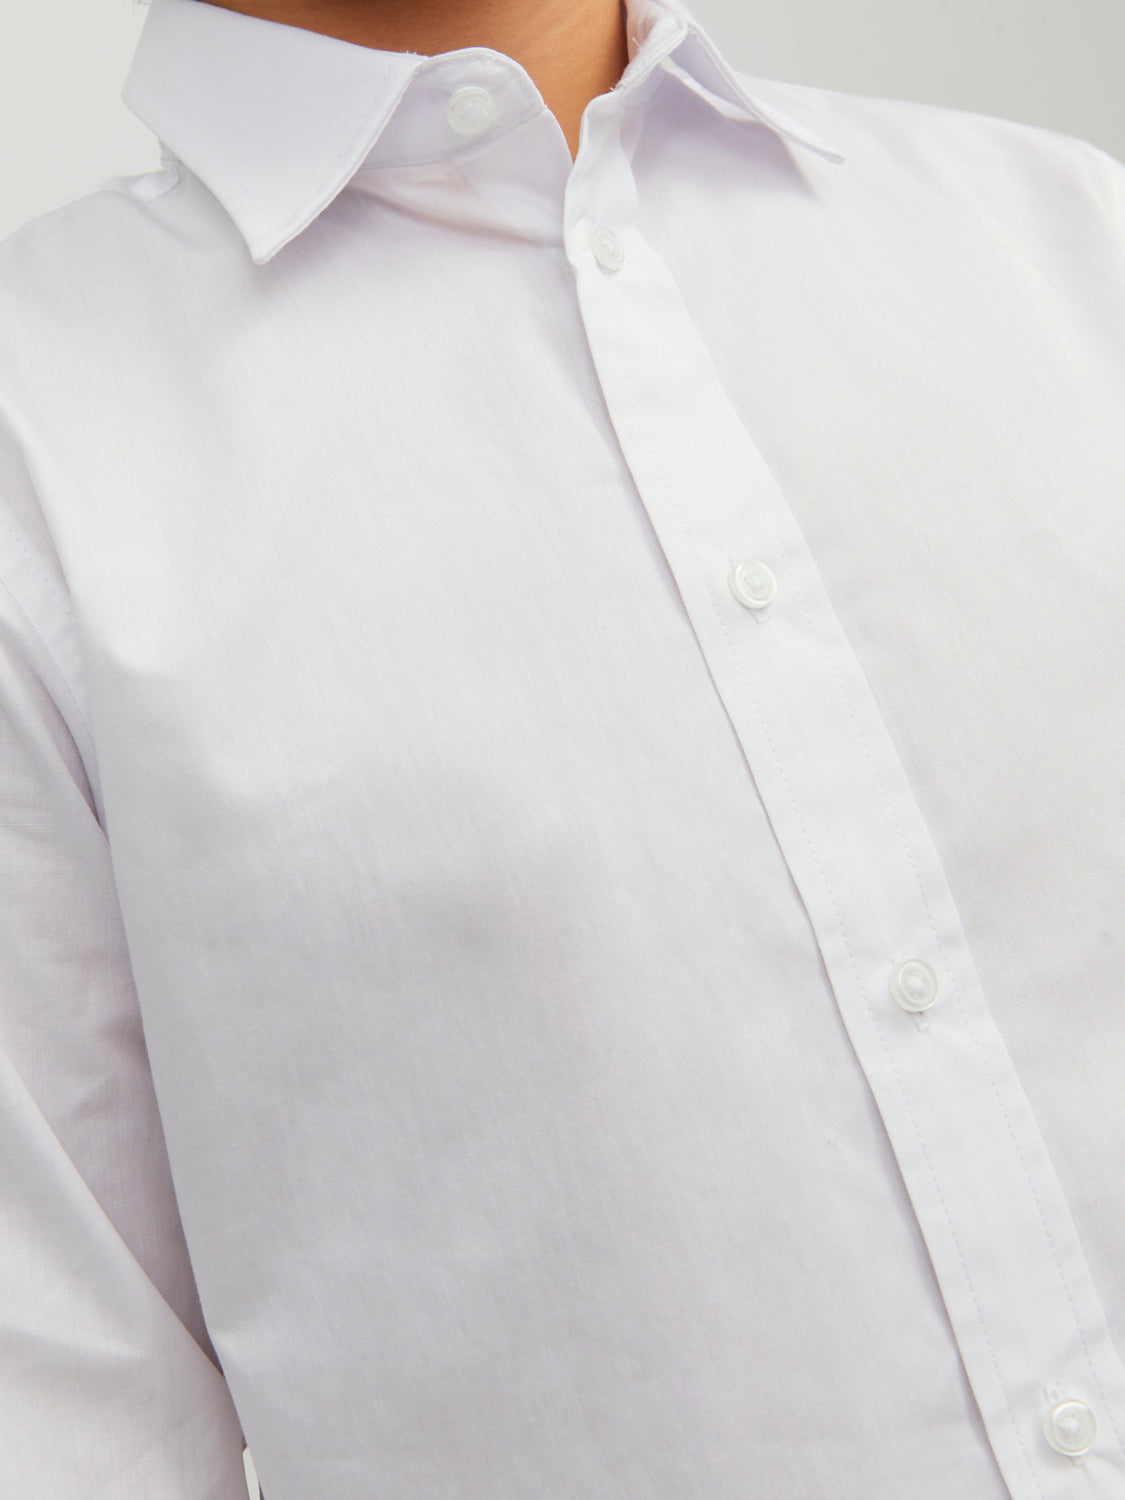 JJJOE Shirts - White